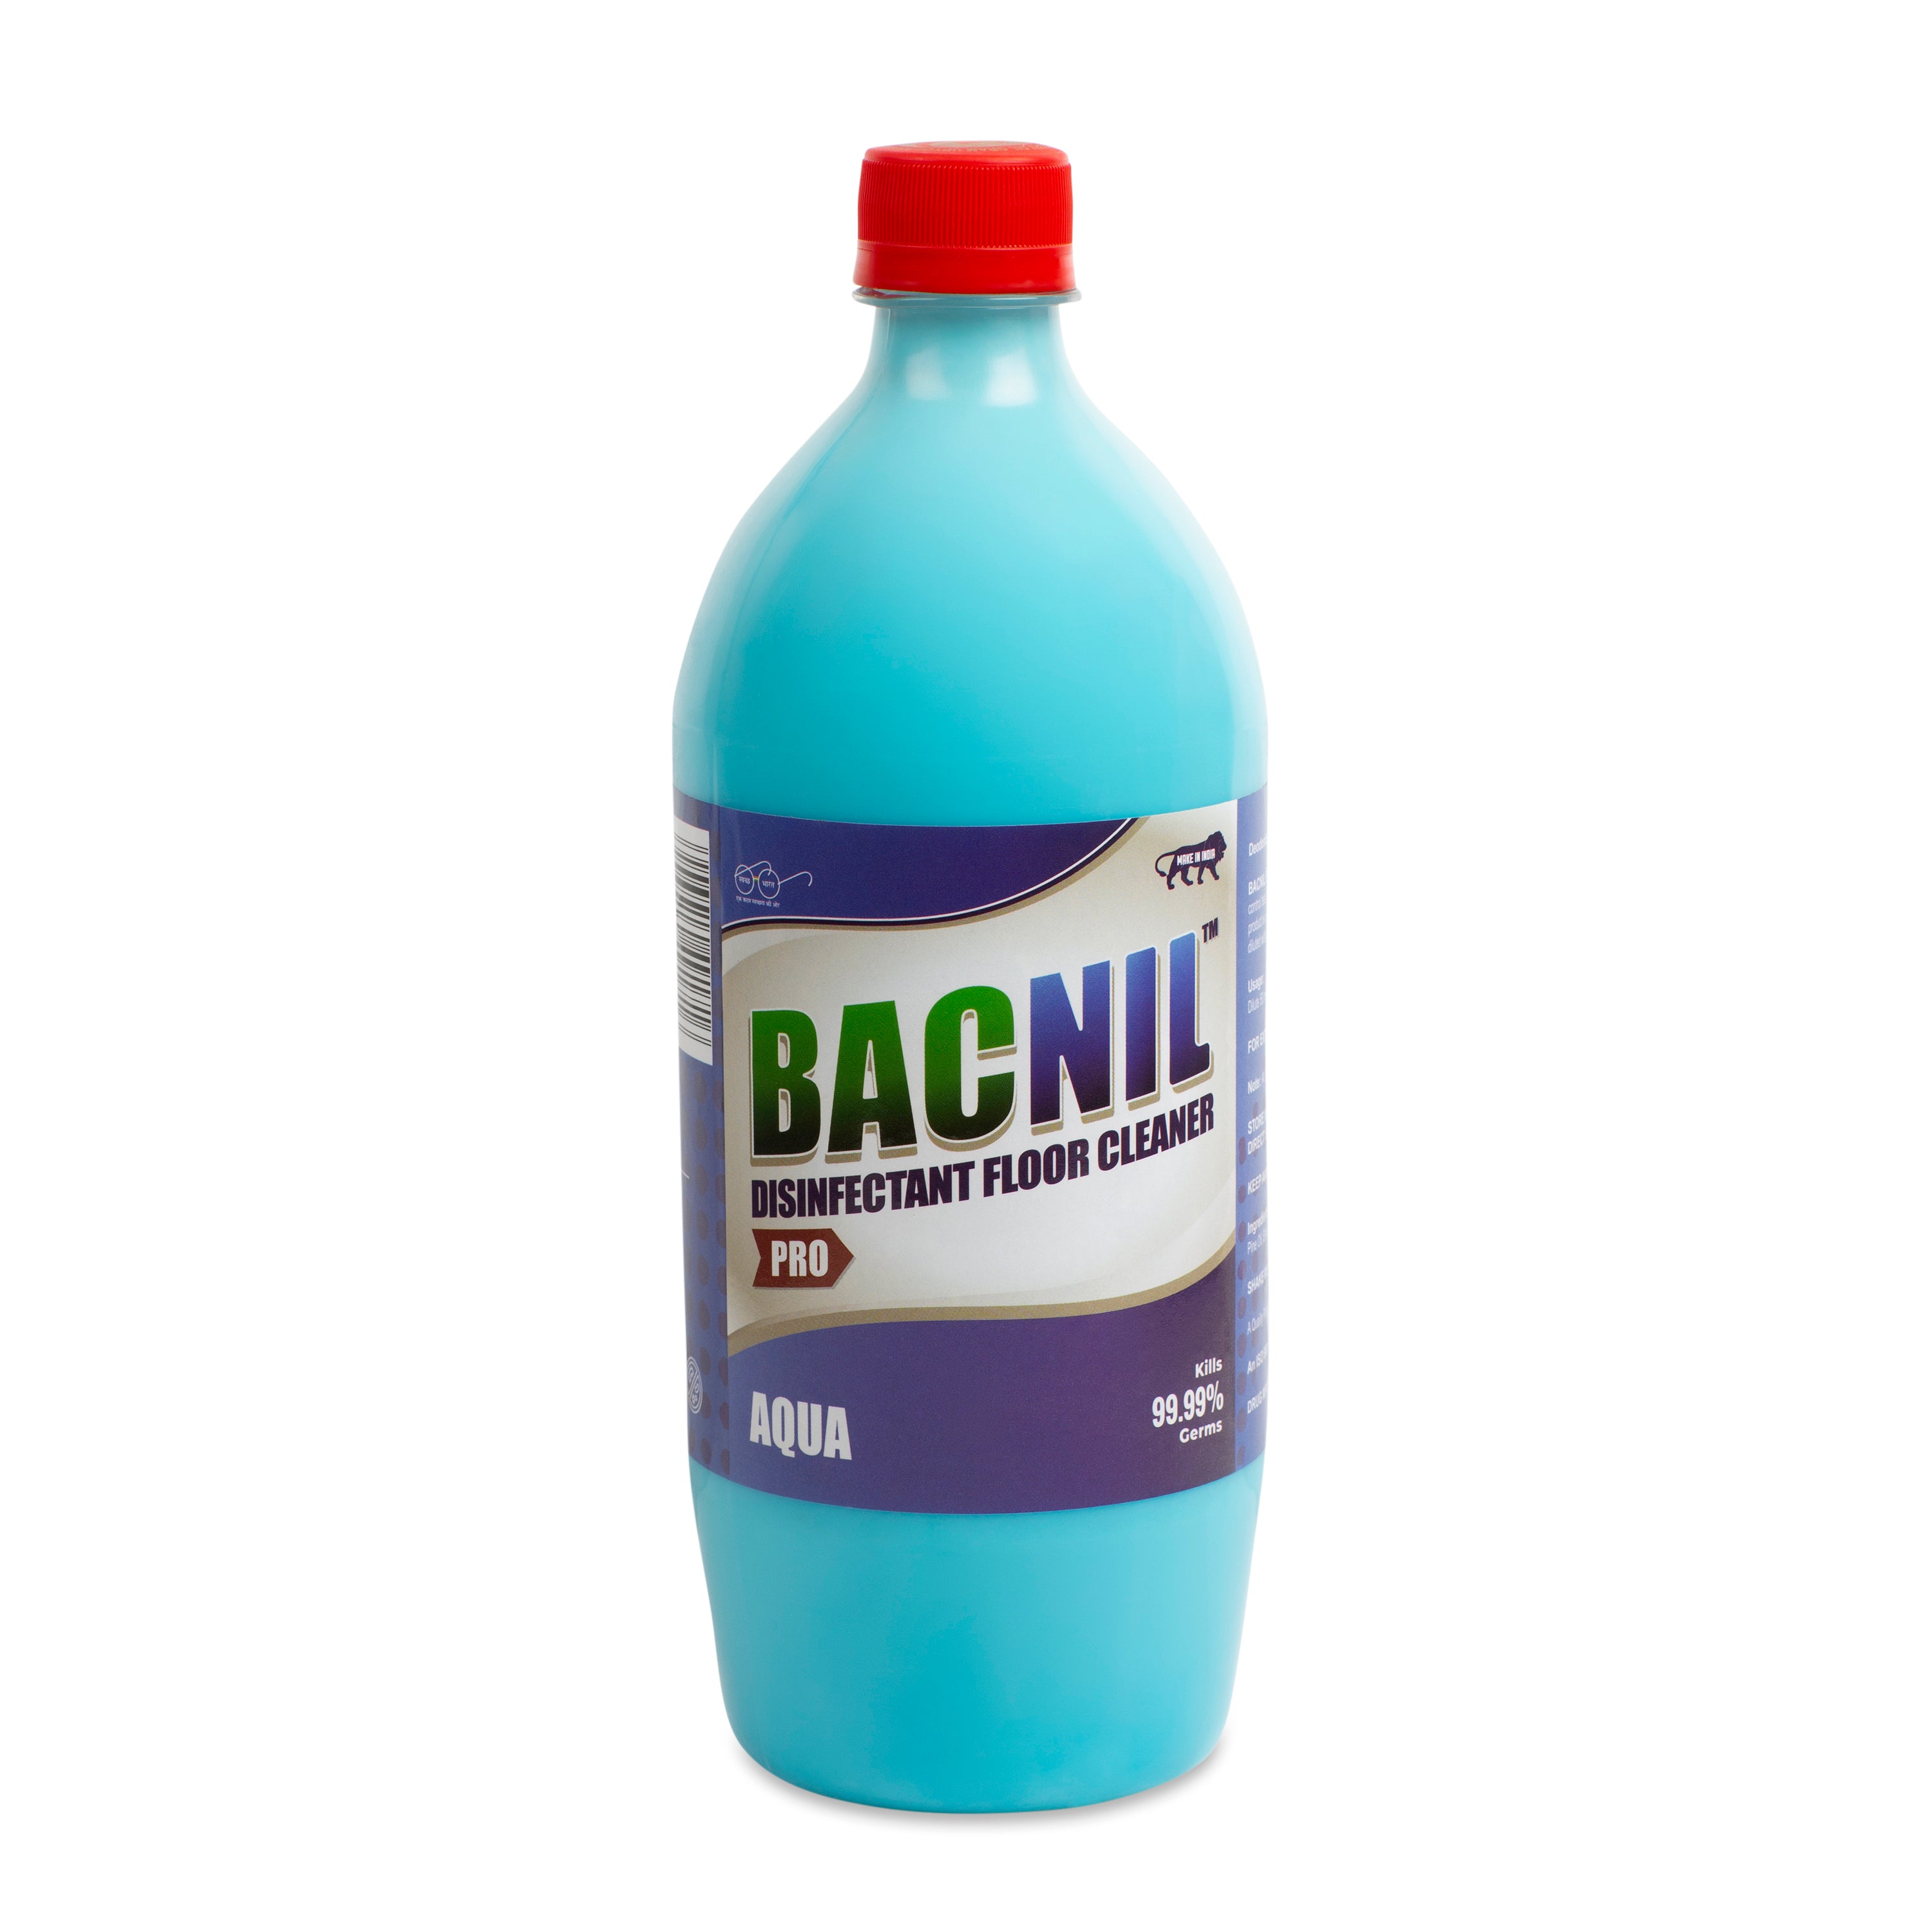 Bacnil Pro - Aqua Floor Cleaner